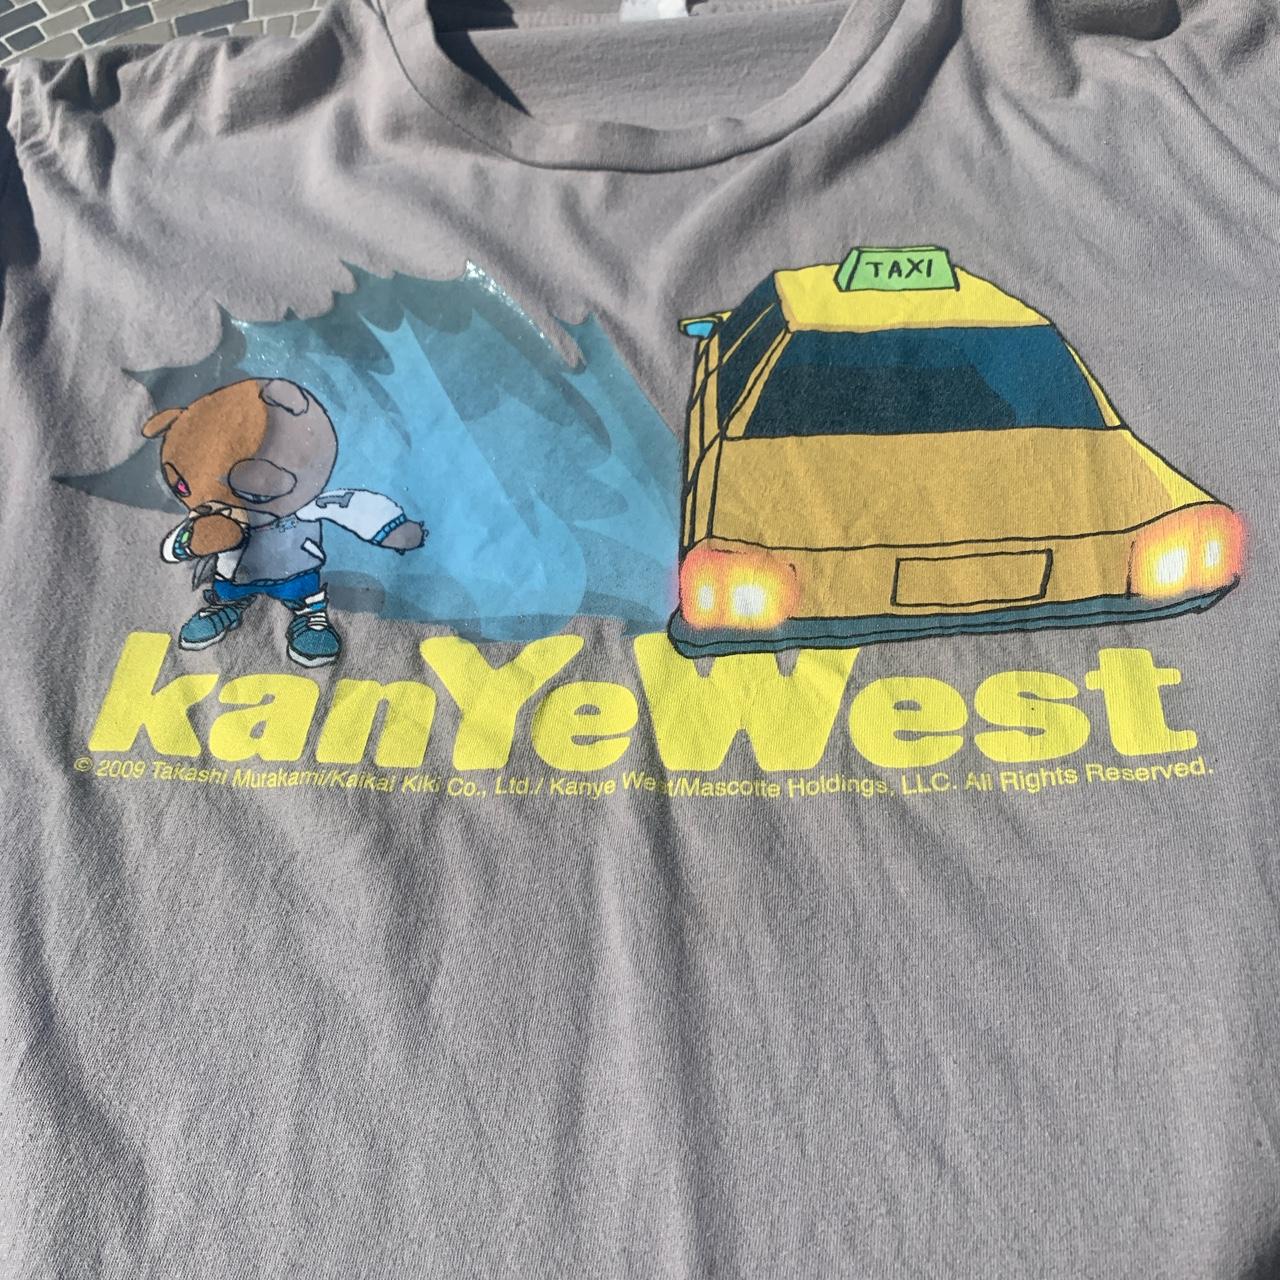 Kanye West - Tag